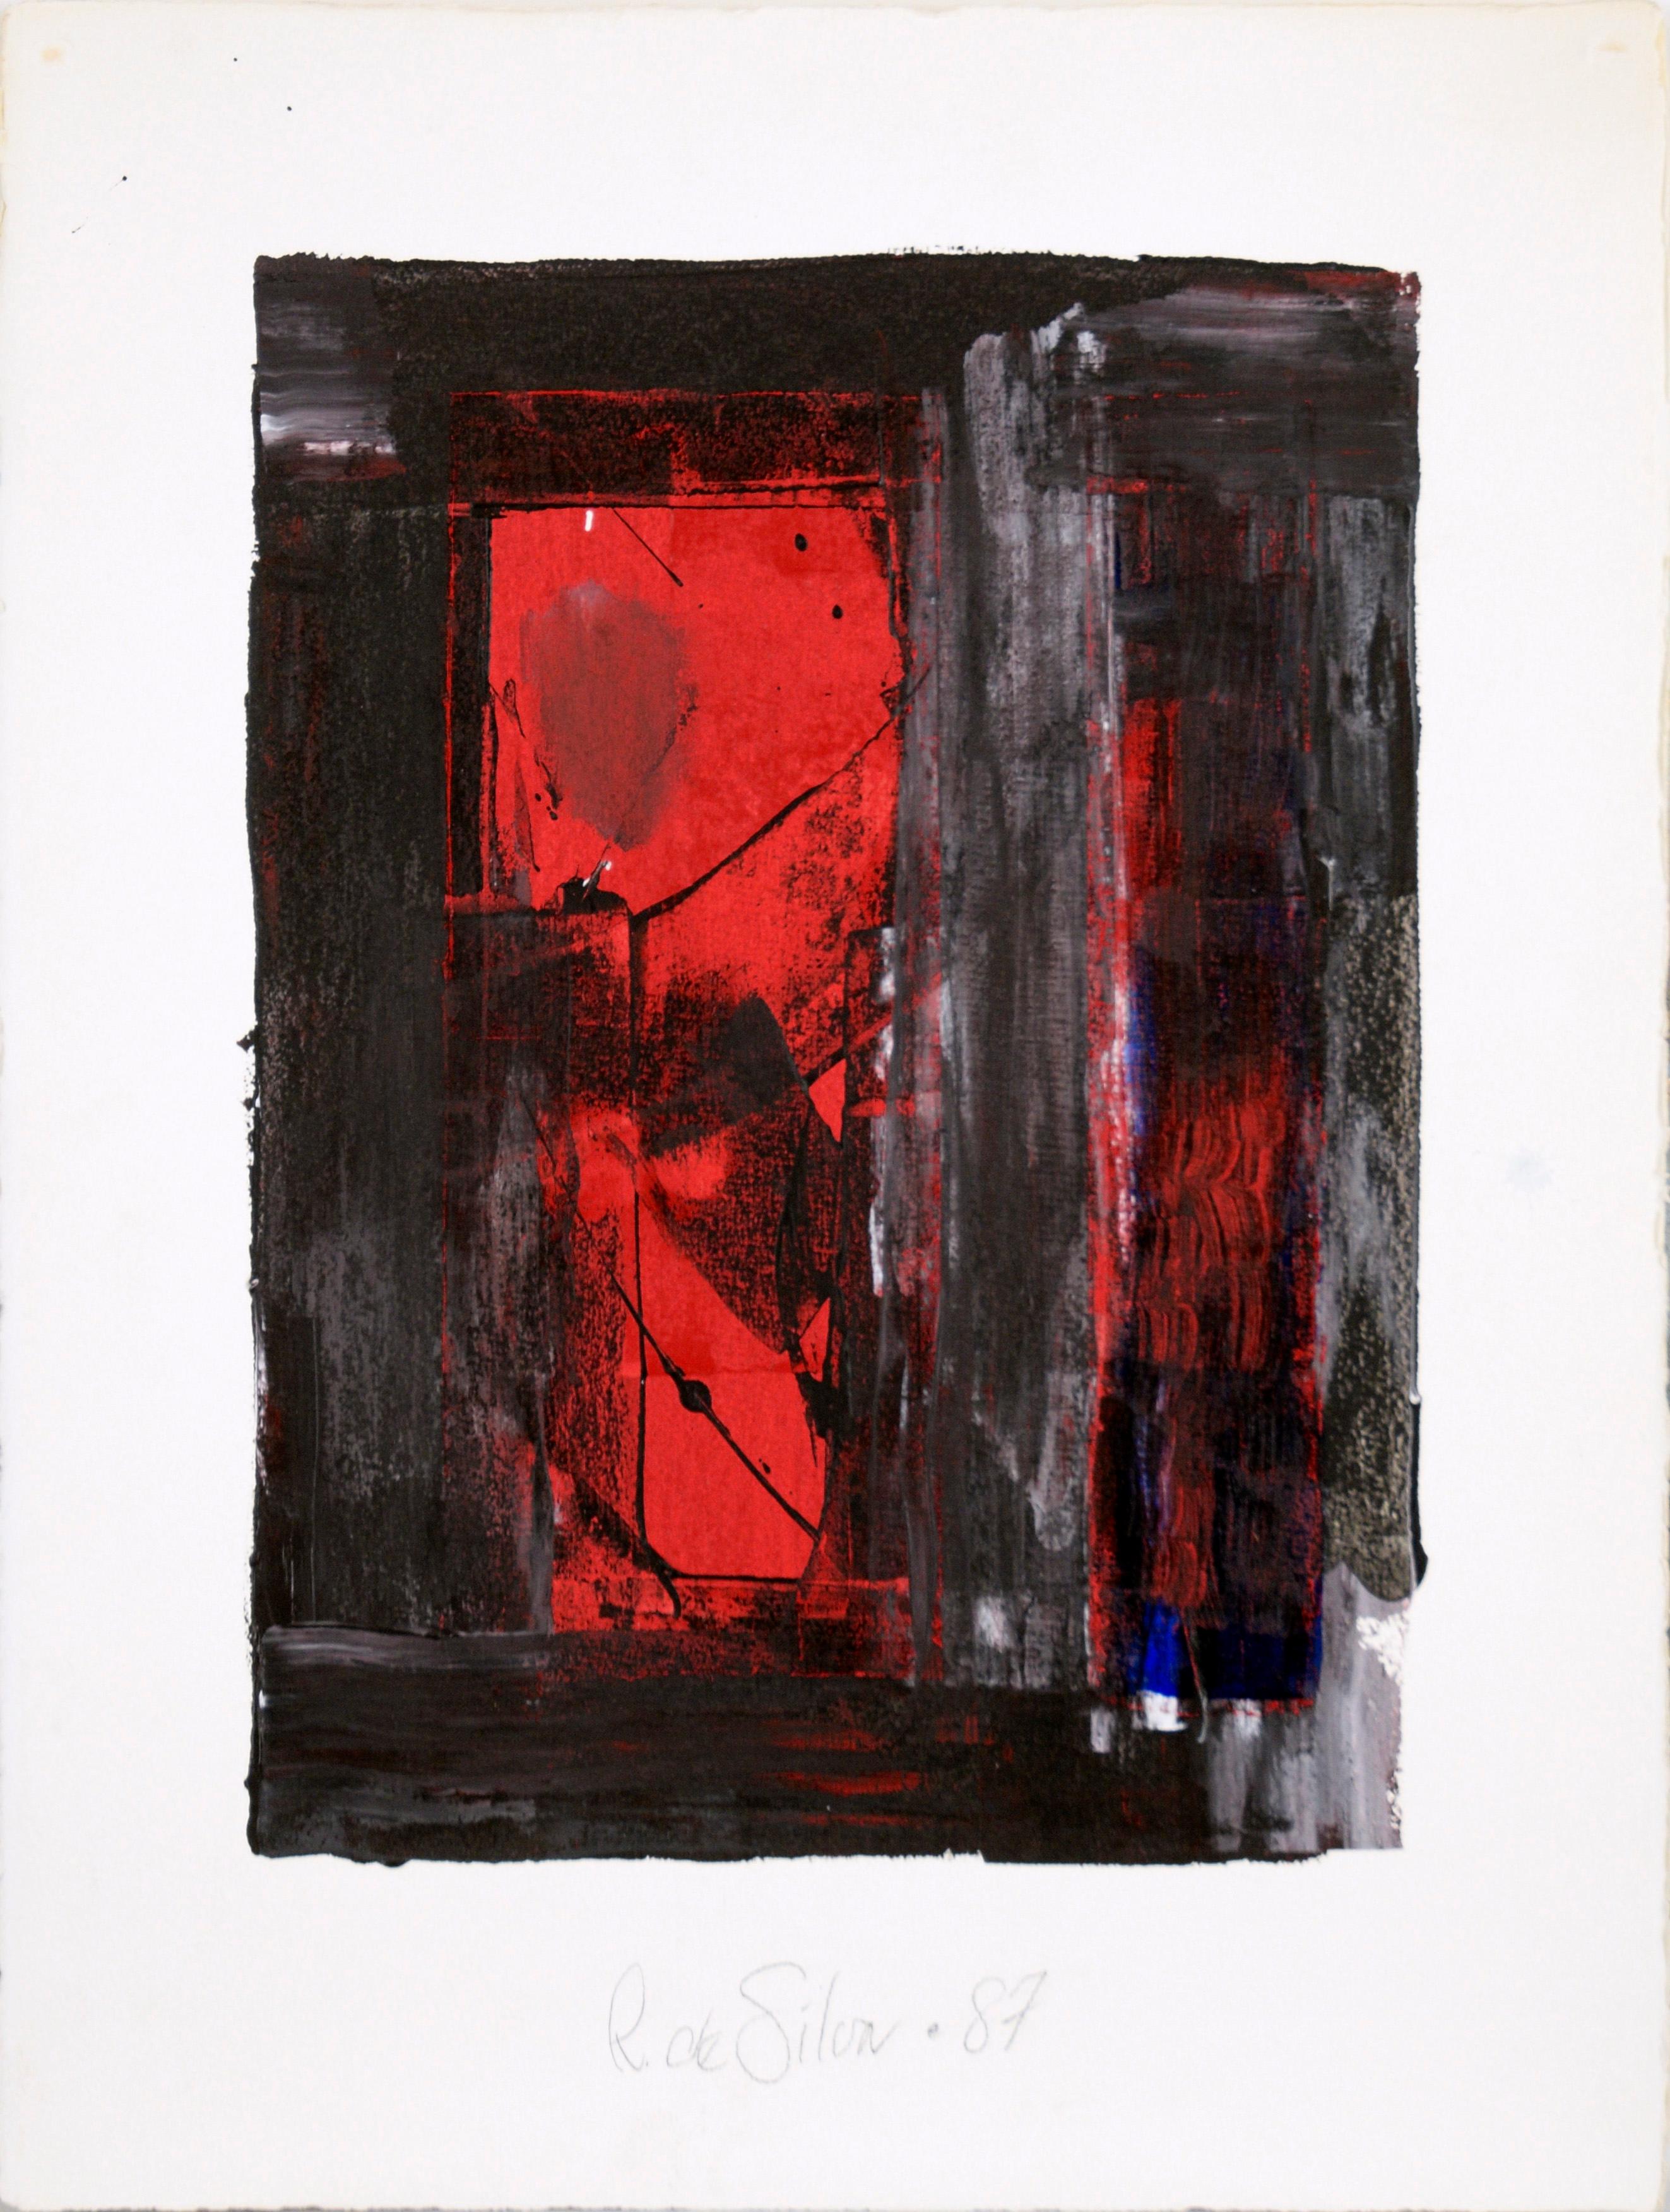 Rotes Portal, Abstrakt-impressionistische Komposition aus Acryl auf schwerem Bogenpapier